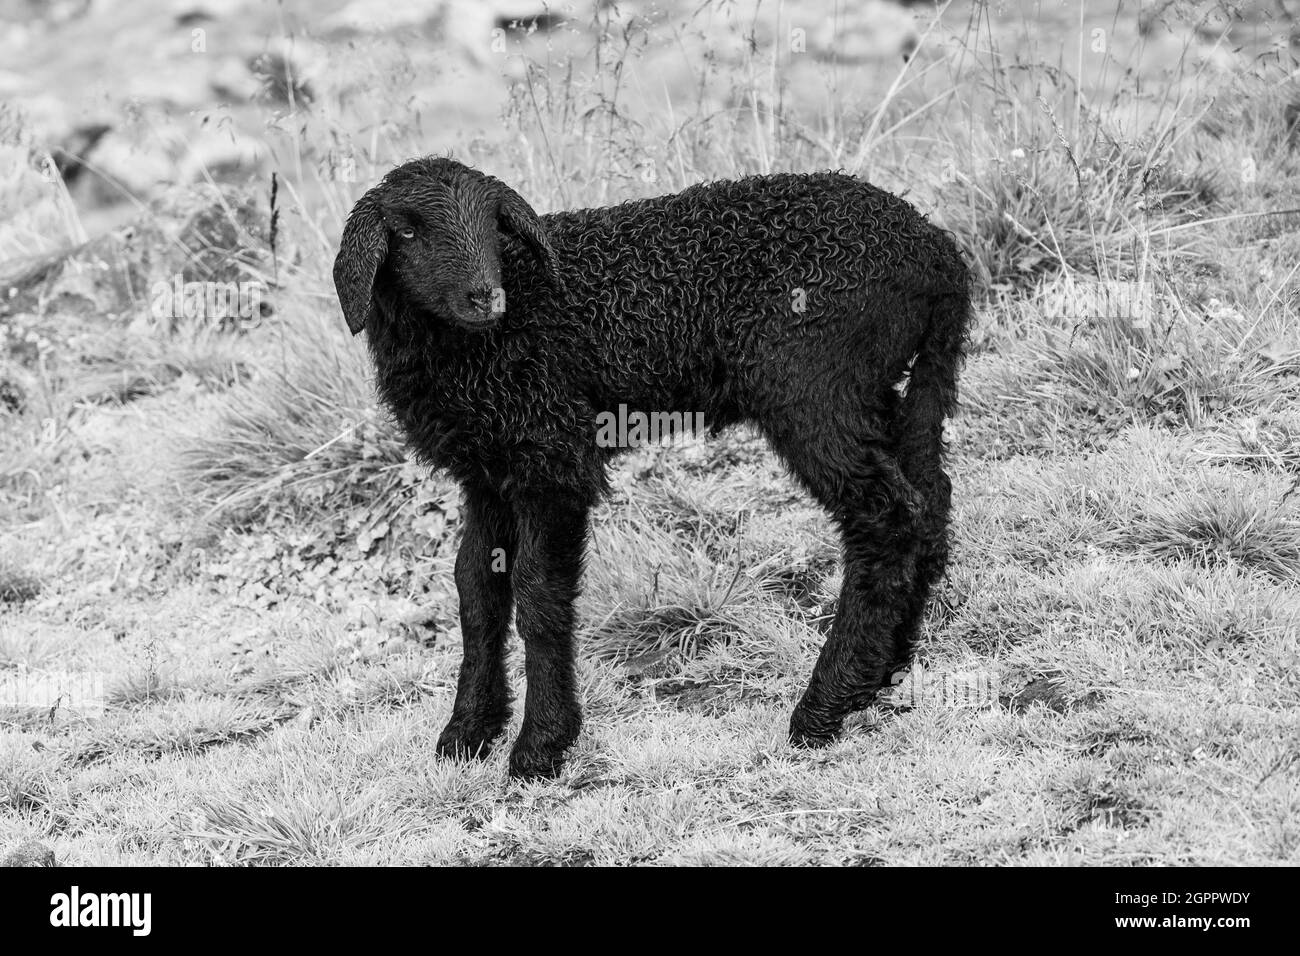 Carino agnello nero su alpeggi. Immagine in bianco e nero. Foto Stock